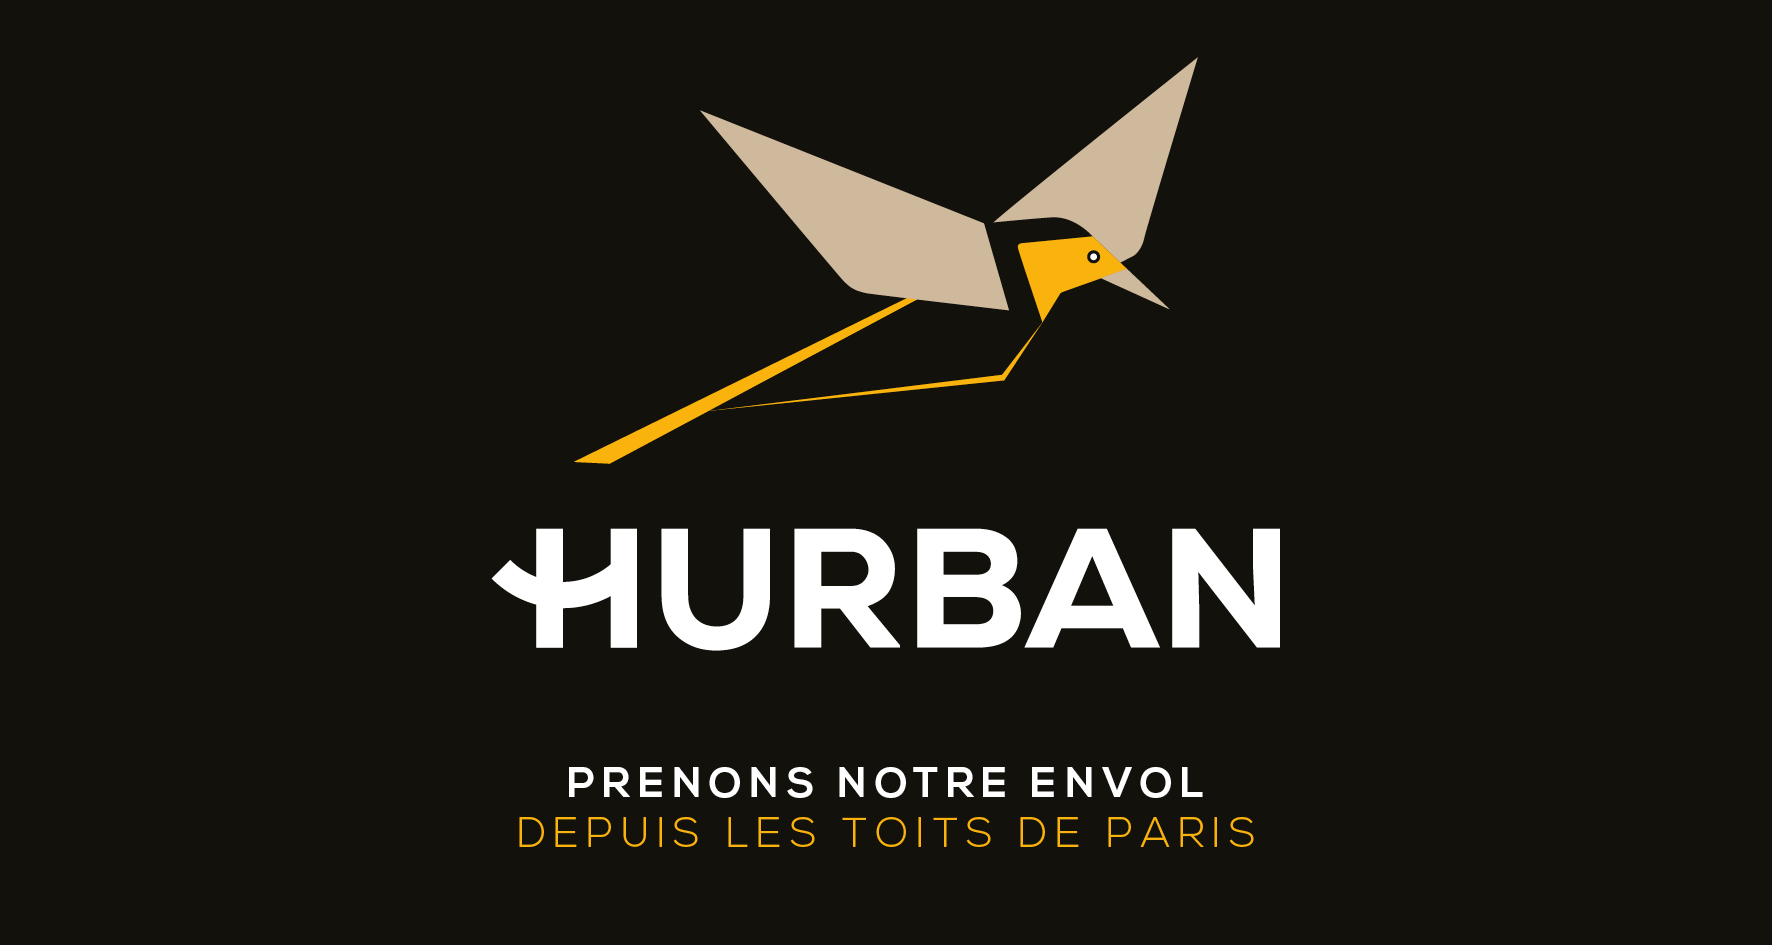 HURBAN visuel actu site web 2019